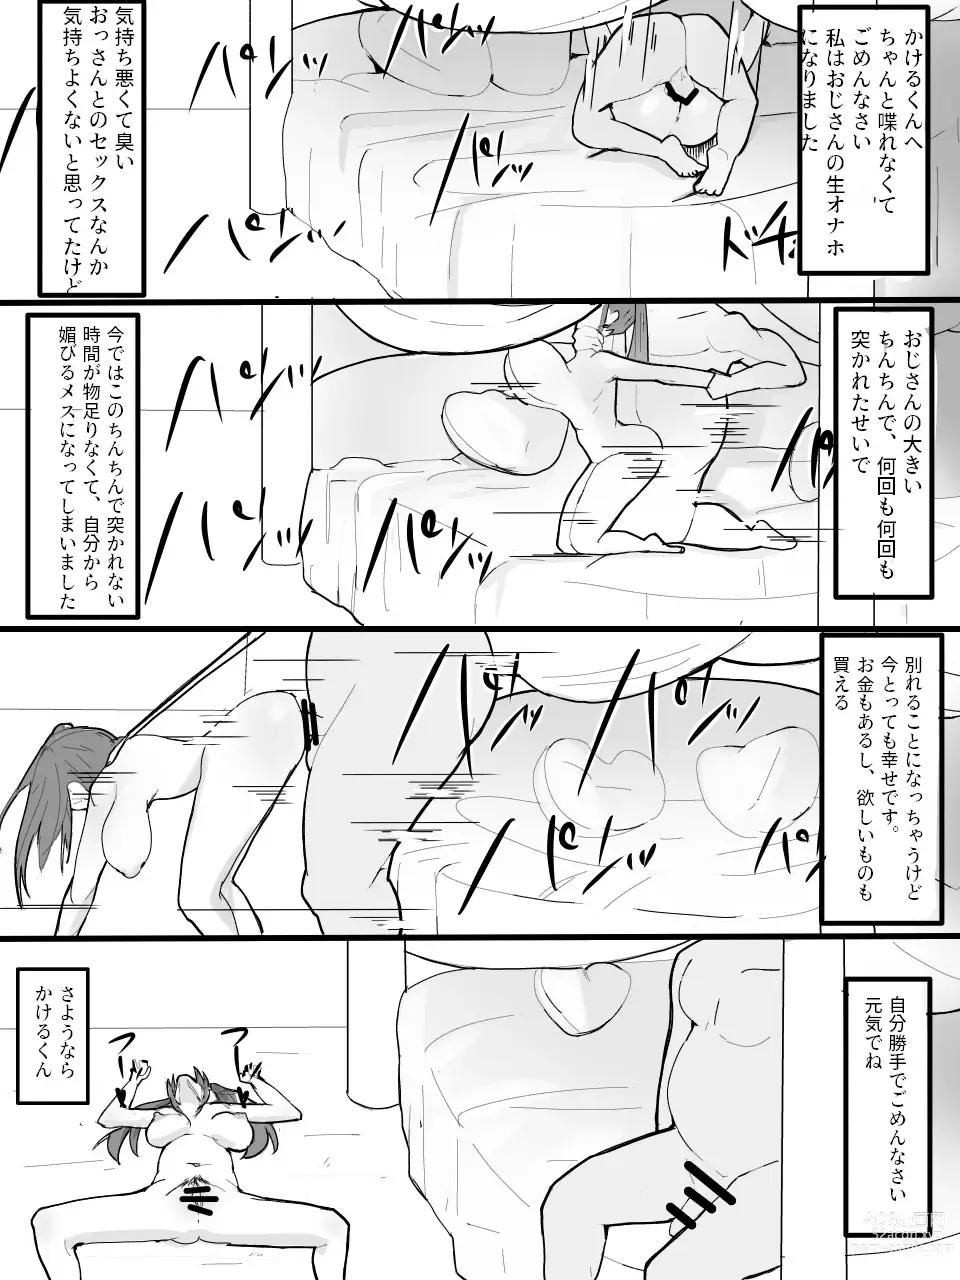 Page 37 of doujinshi Twintail Mask-chan o Saimin de Onaho ni Shiyou!